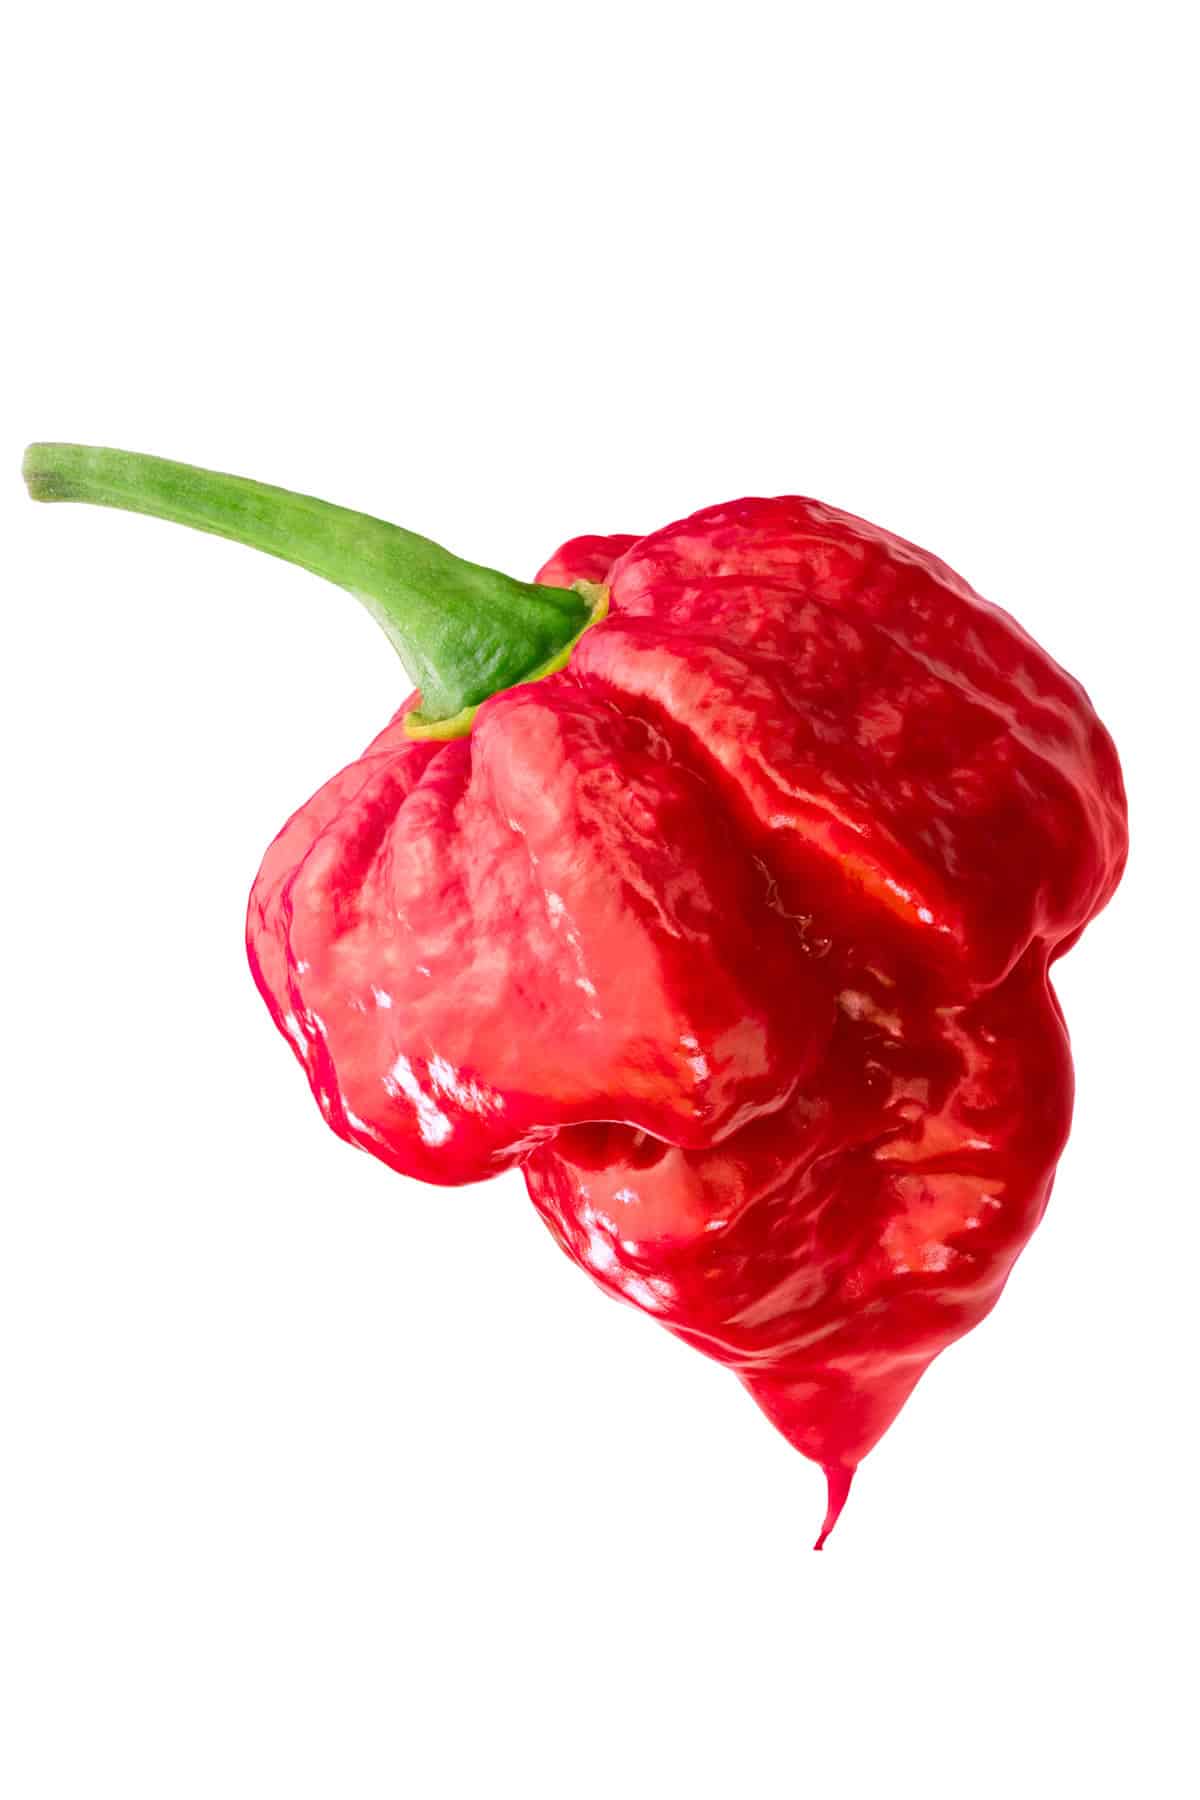 scorpions pepper